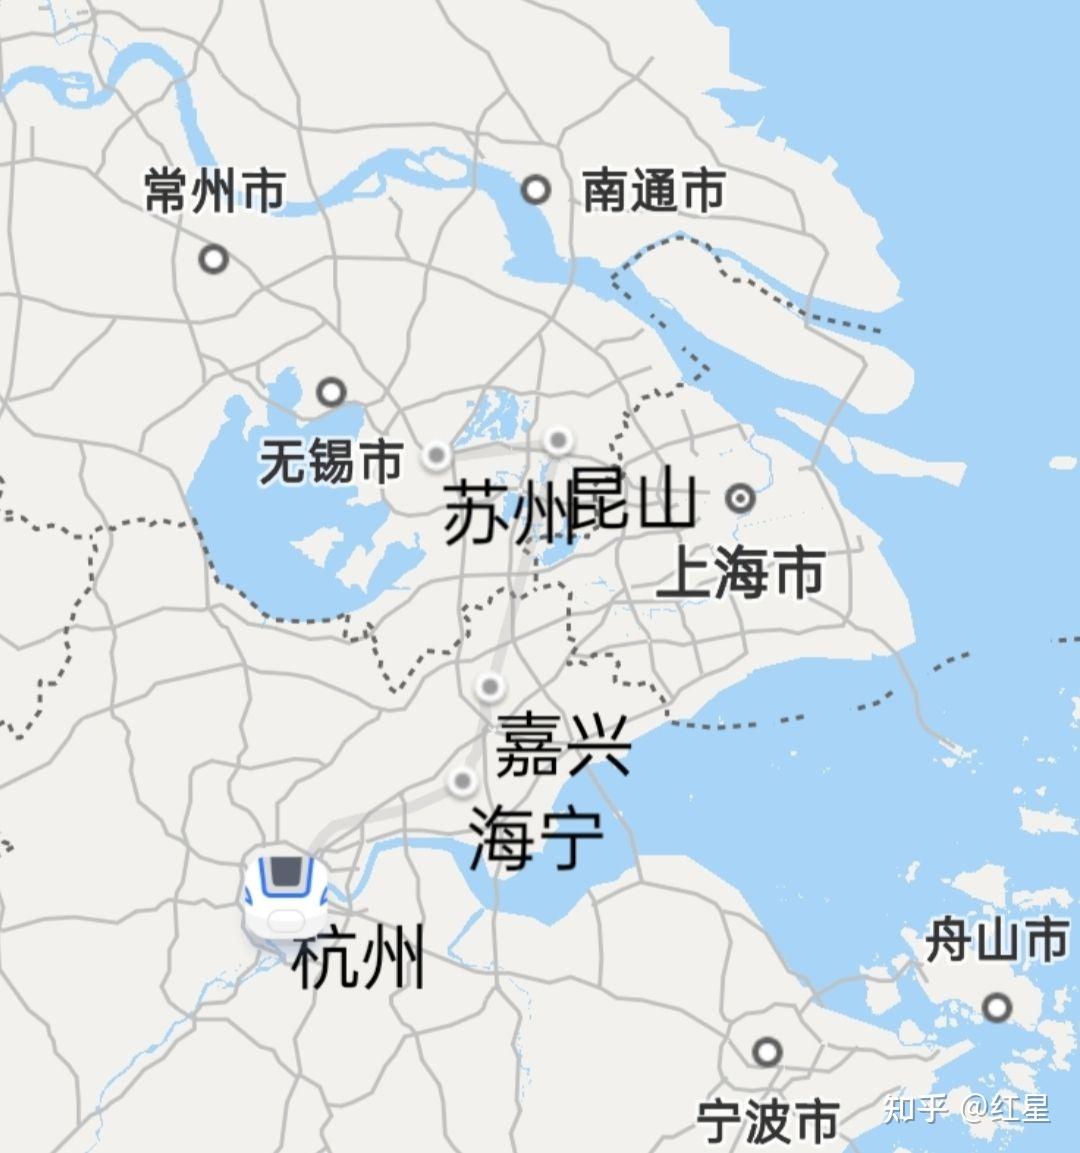 从江西去苏州,中途在上海转车,回江西需要隔离吗? 